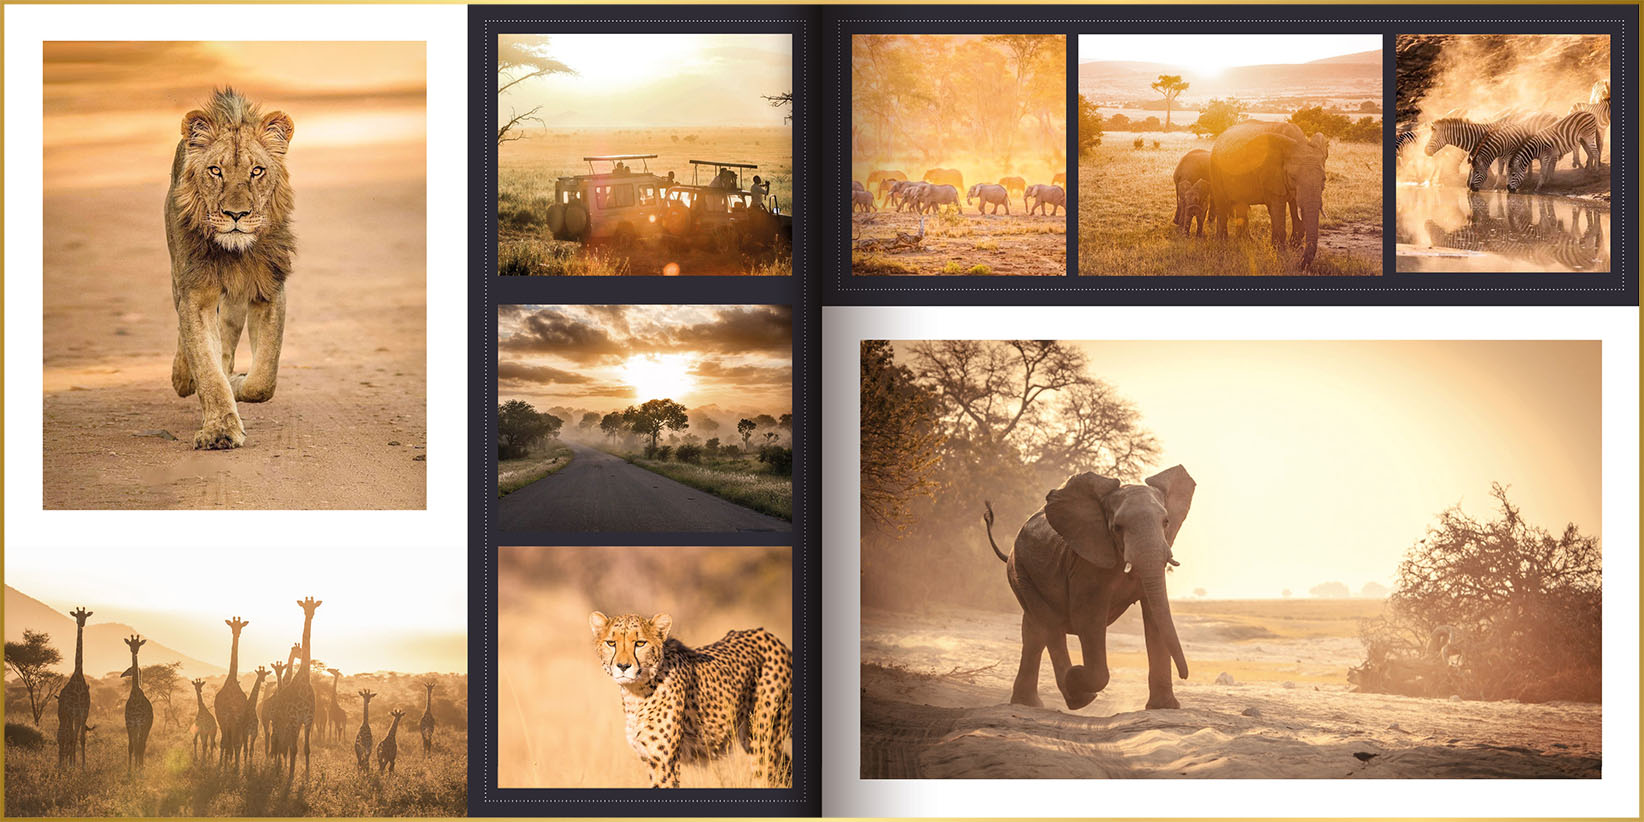 fotoboek in ontwerpstijl Square met foto's van leeuwen, olifanten, zebra's en cheeta zonder tekst